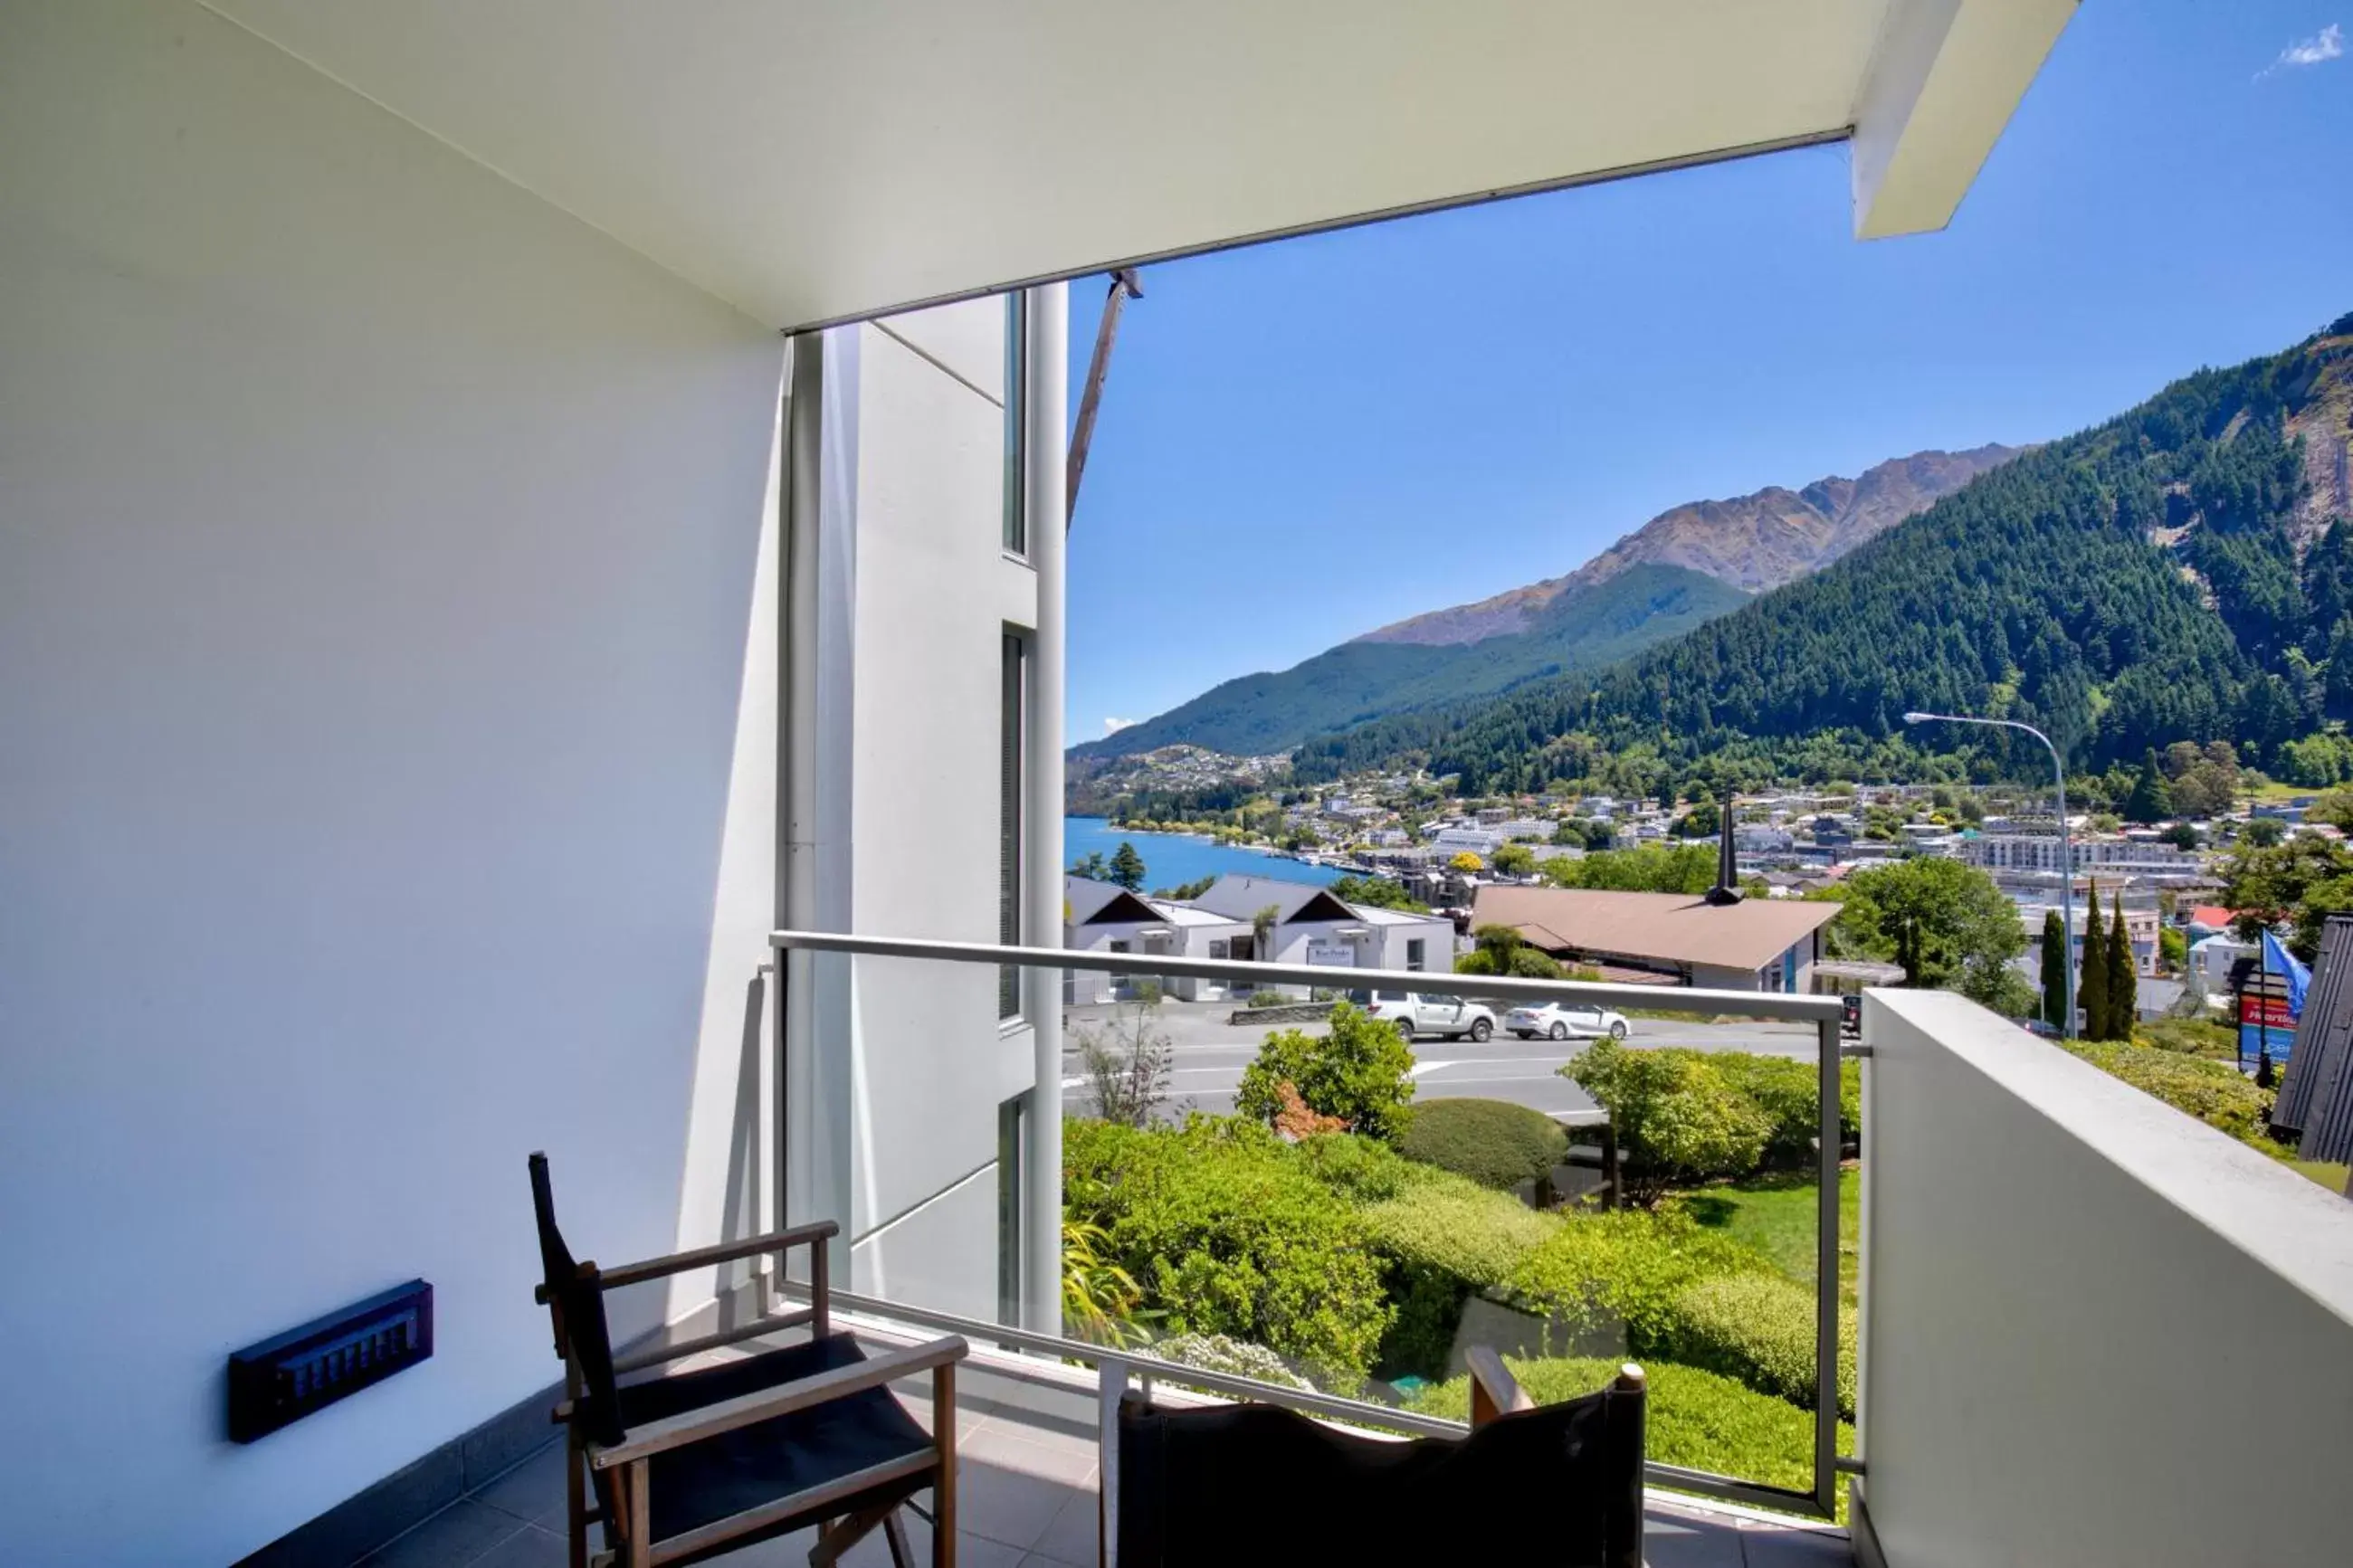 Balcony/Terrace, Mountain View in Scenic Suites Queenstown